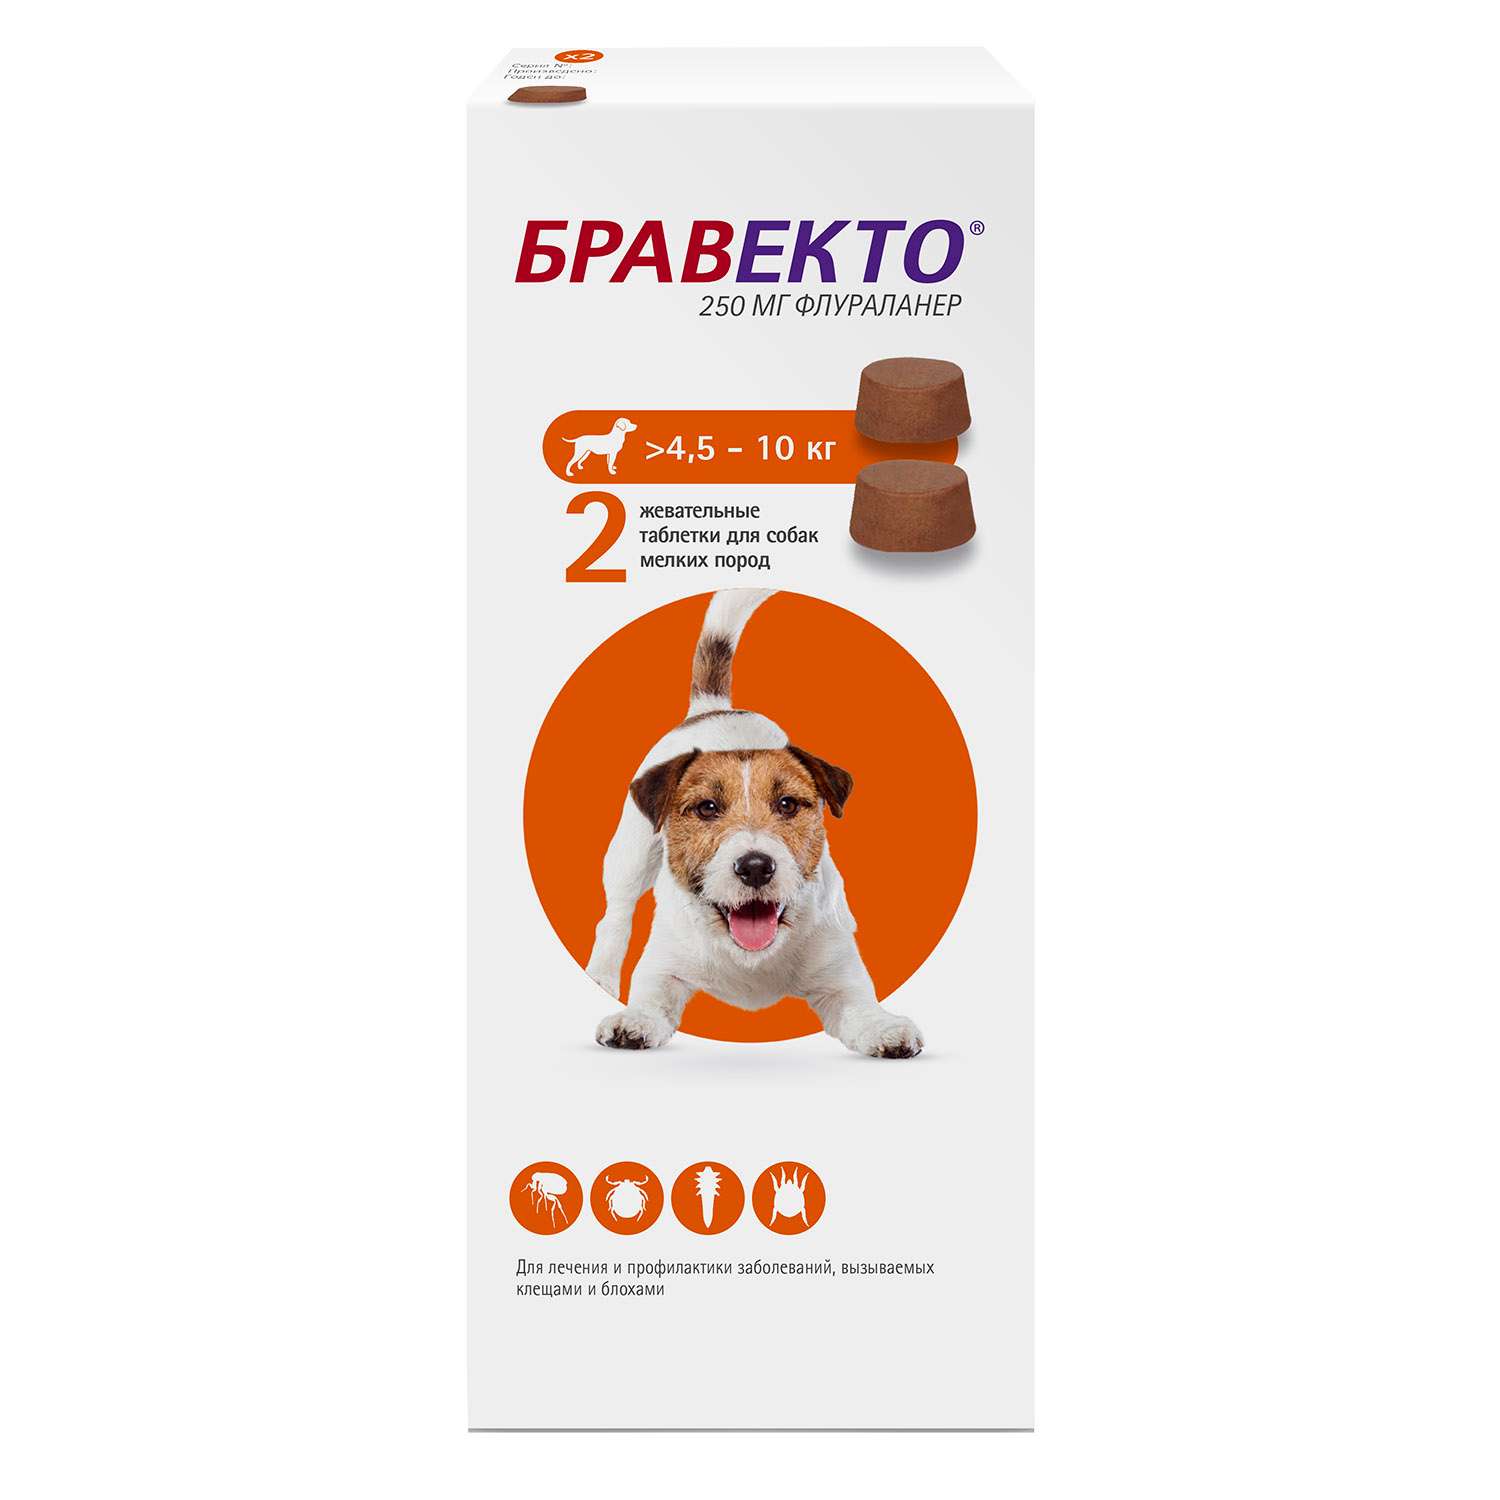 Таблетка бравекто для собак. Бравекто для собак до 10 кг таблетки. Бравекто таблетки от 4,5 до 10 кг. Бравекто (MSD animal Health) таблетки от блох и клещей для собак 4,5-10 кг. Бравекто (Bravecto) 4.5- 10.